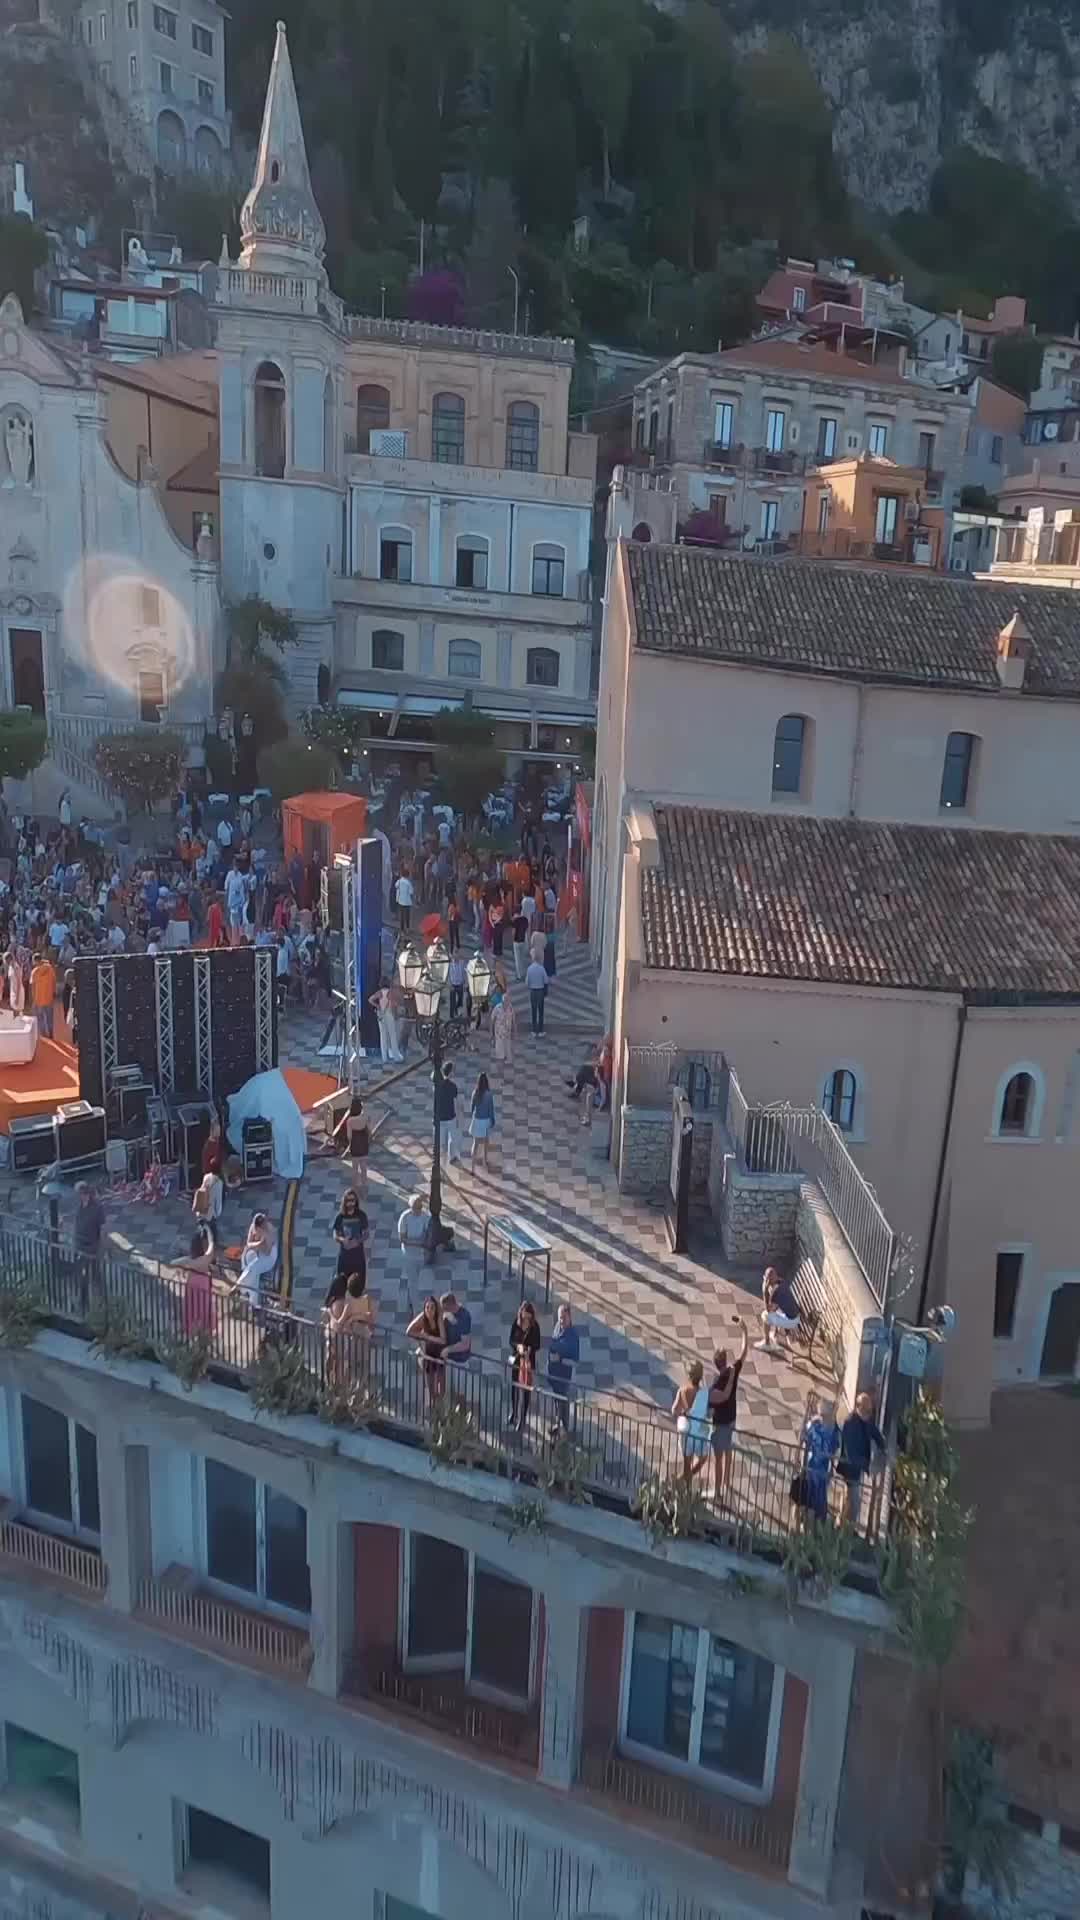 Taobuk 2023: Taormina's Gala Event in Stunning 4K Drone Views